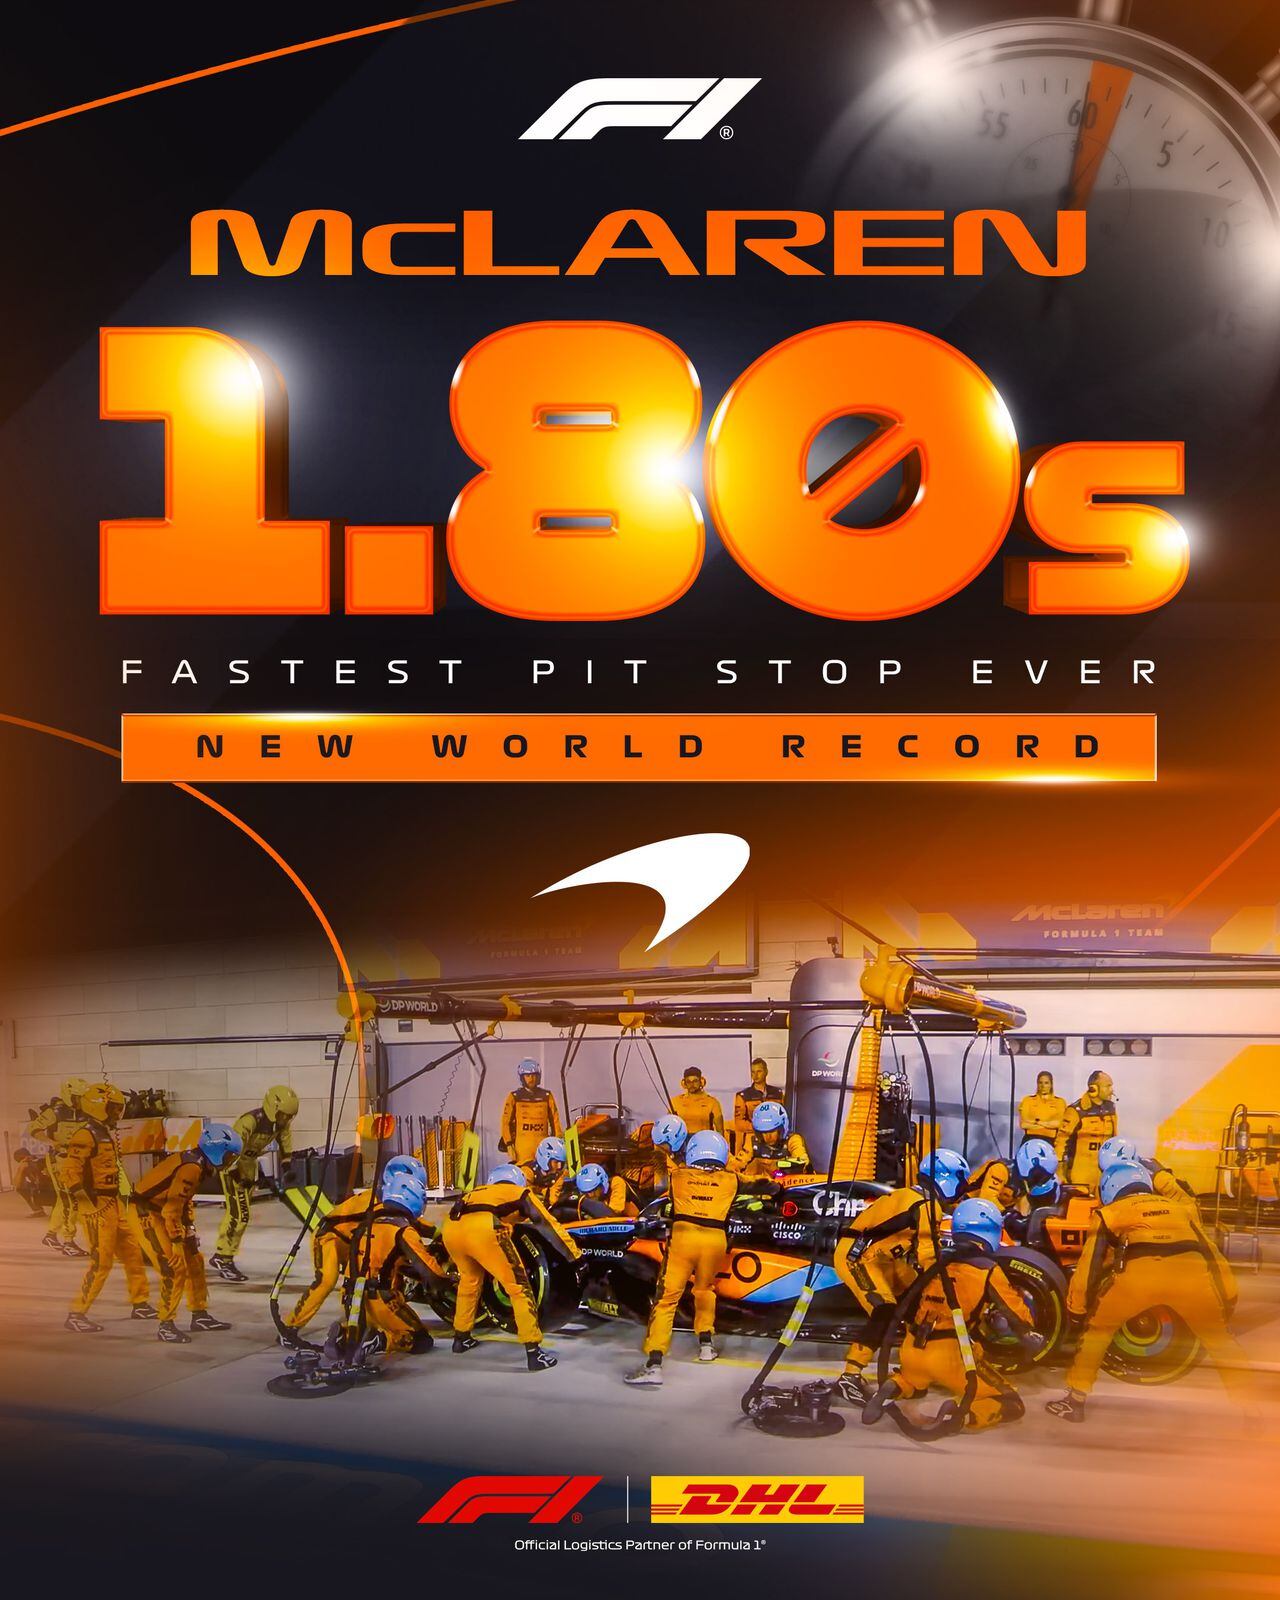 La Fórmula Uno confirmó el récord mundial que ahora tiene McLaren.